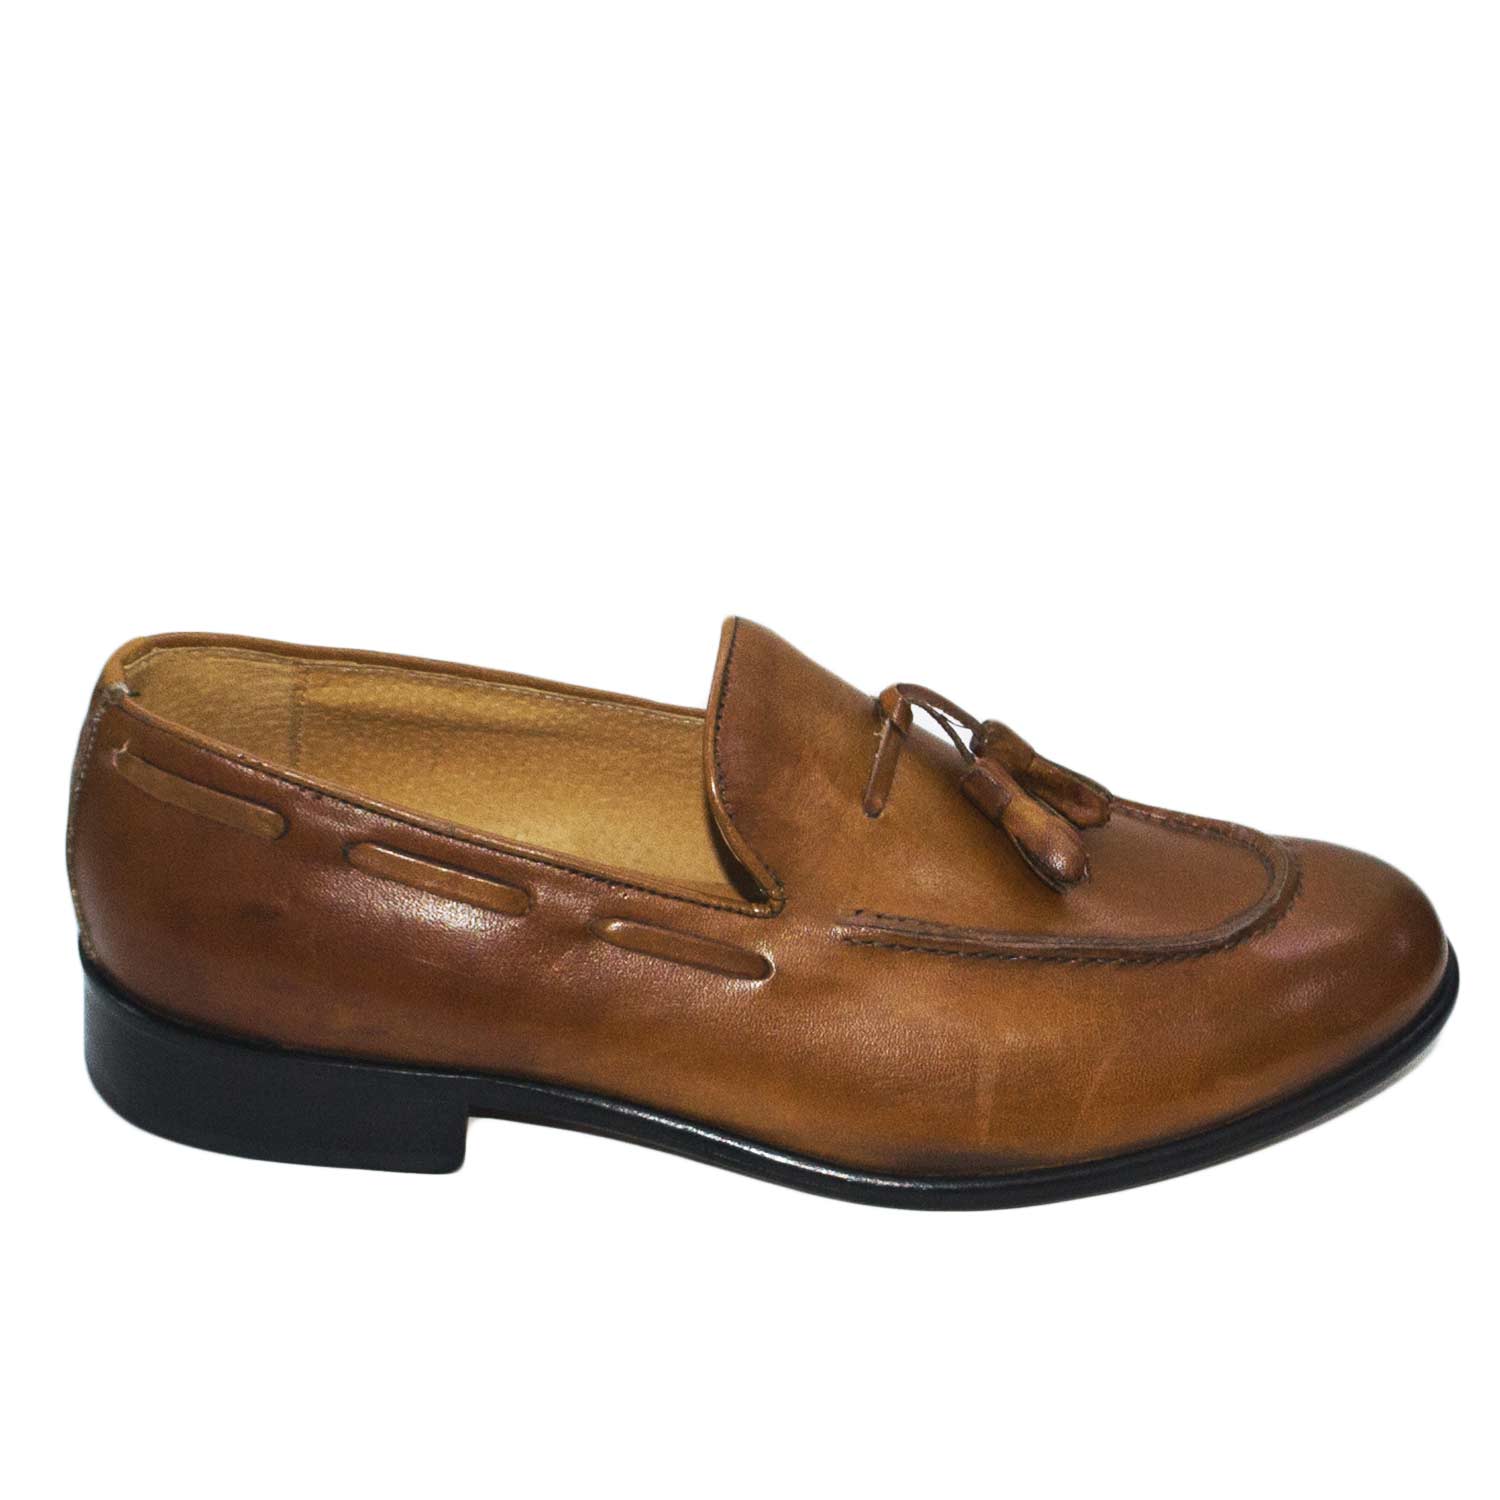 scarpe uomo mocassino nappe cuoio stile uomo classico in vera pelle fondo suola antiscivolo lavorazione made in italia.